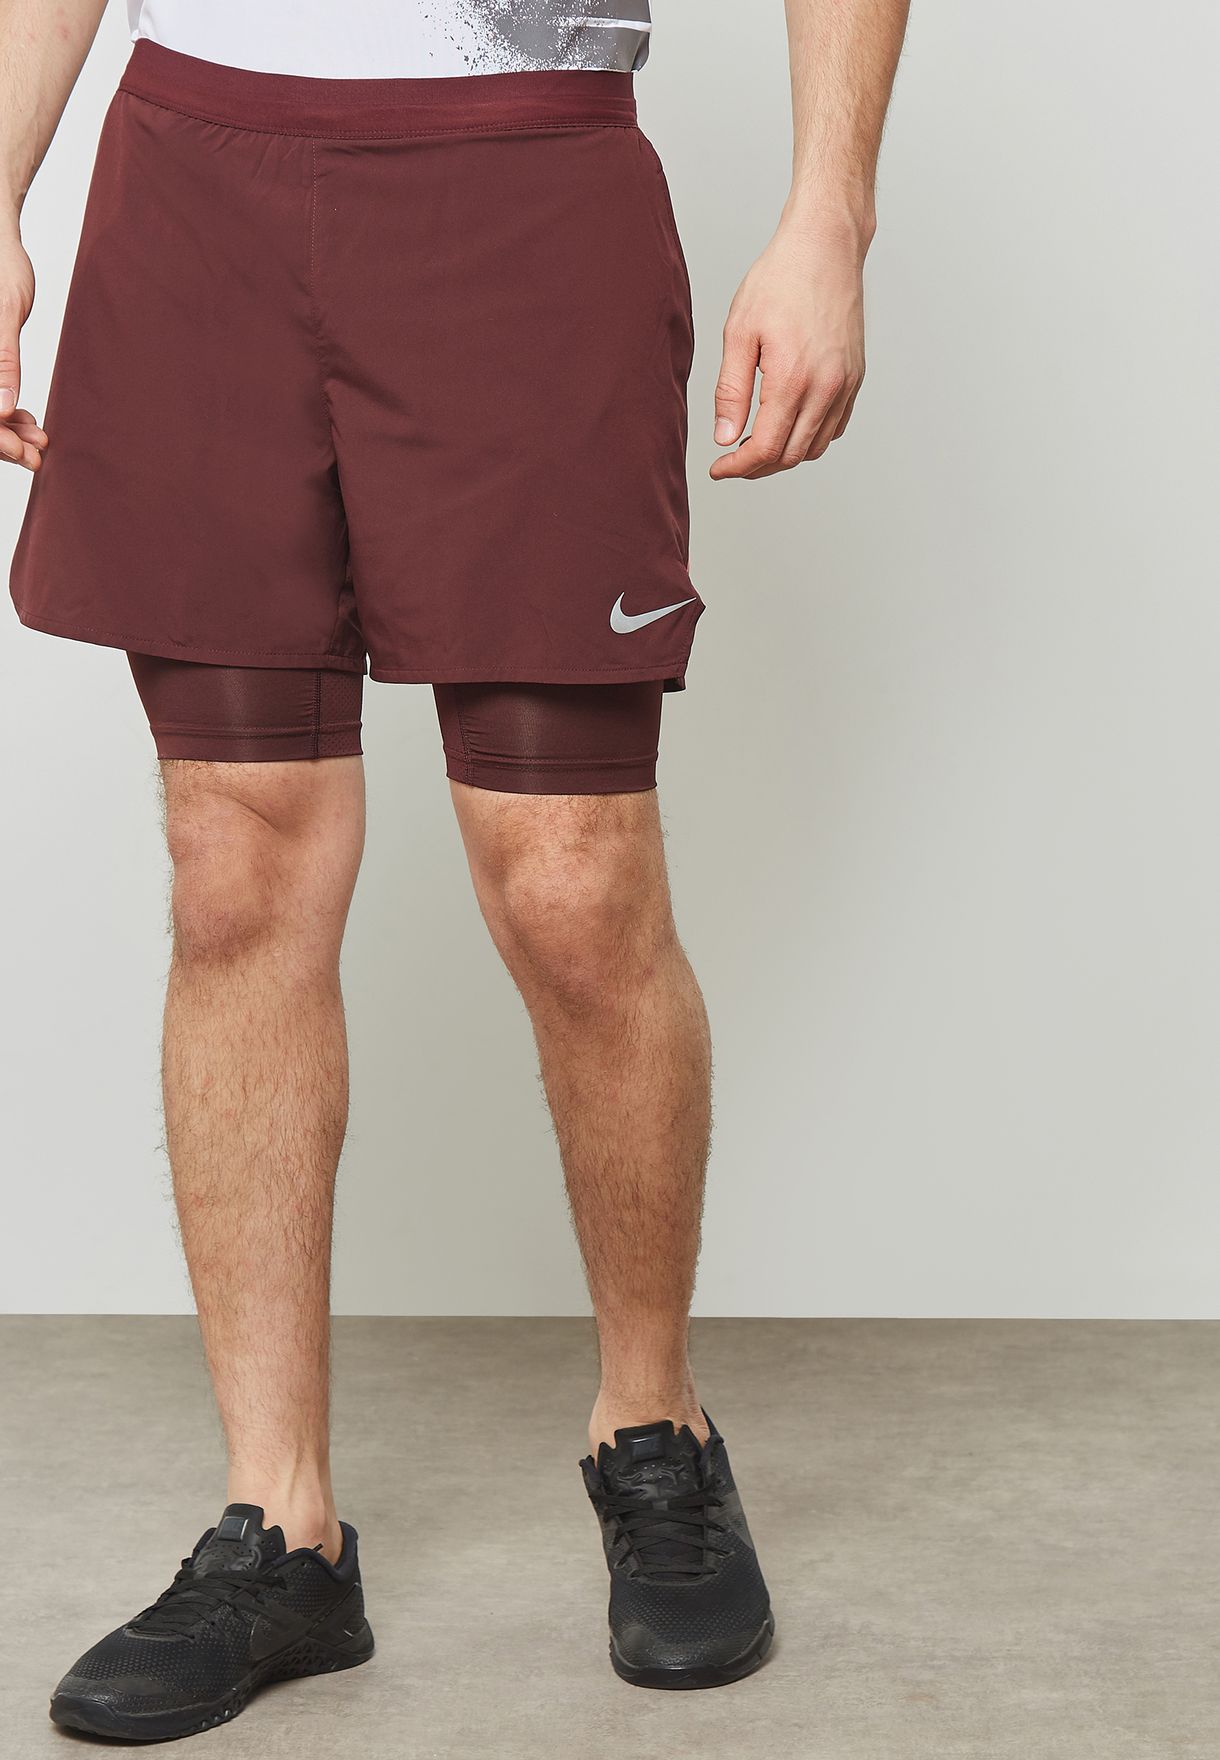 burgundy nike shorts